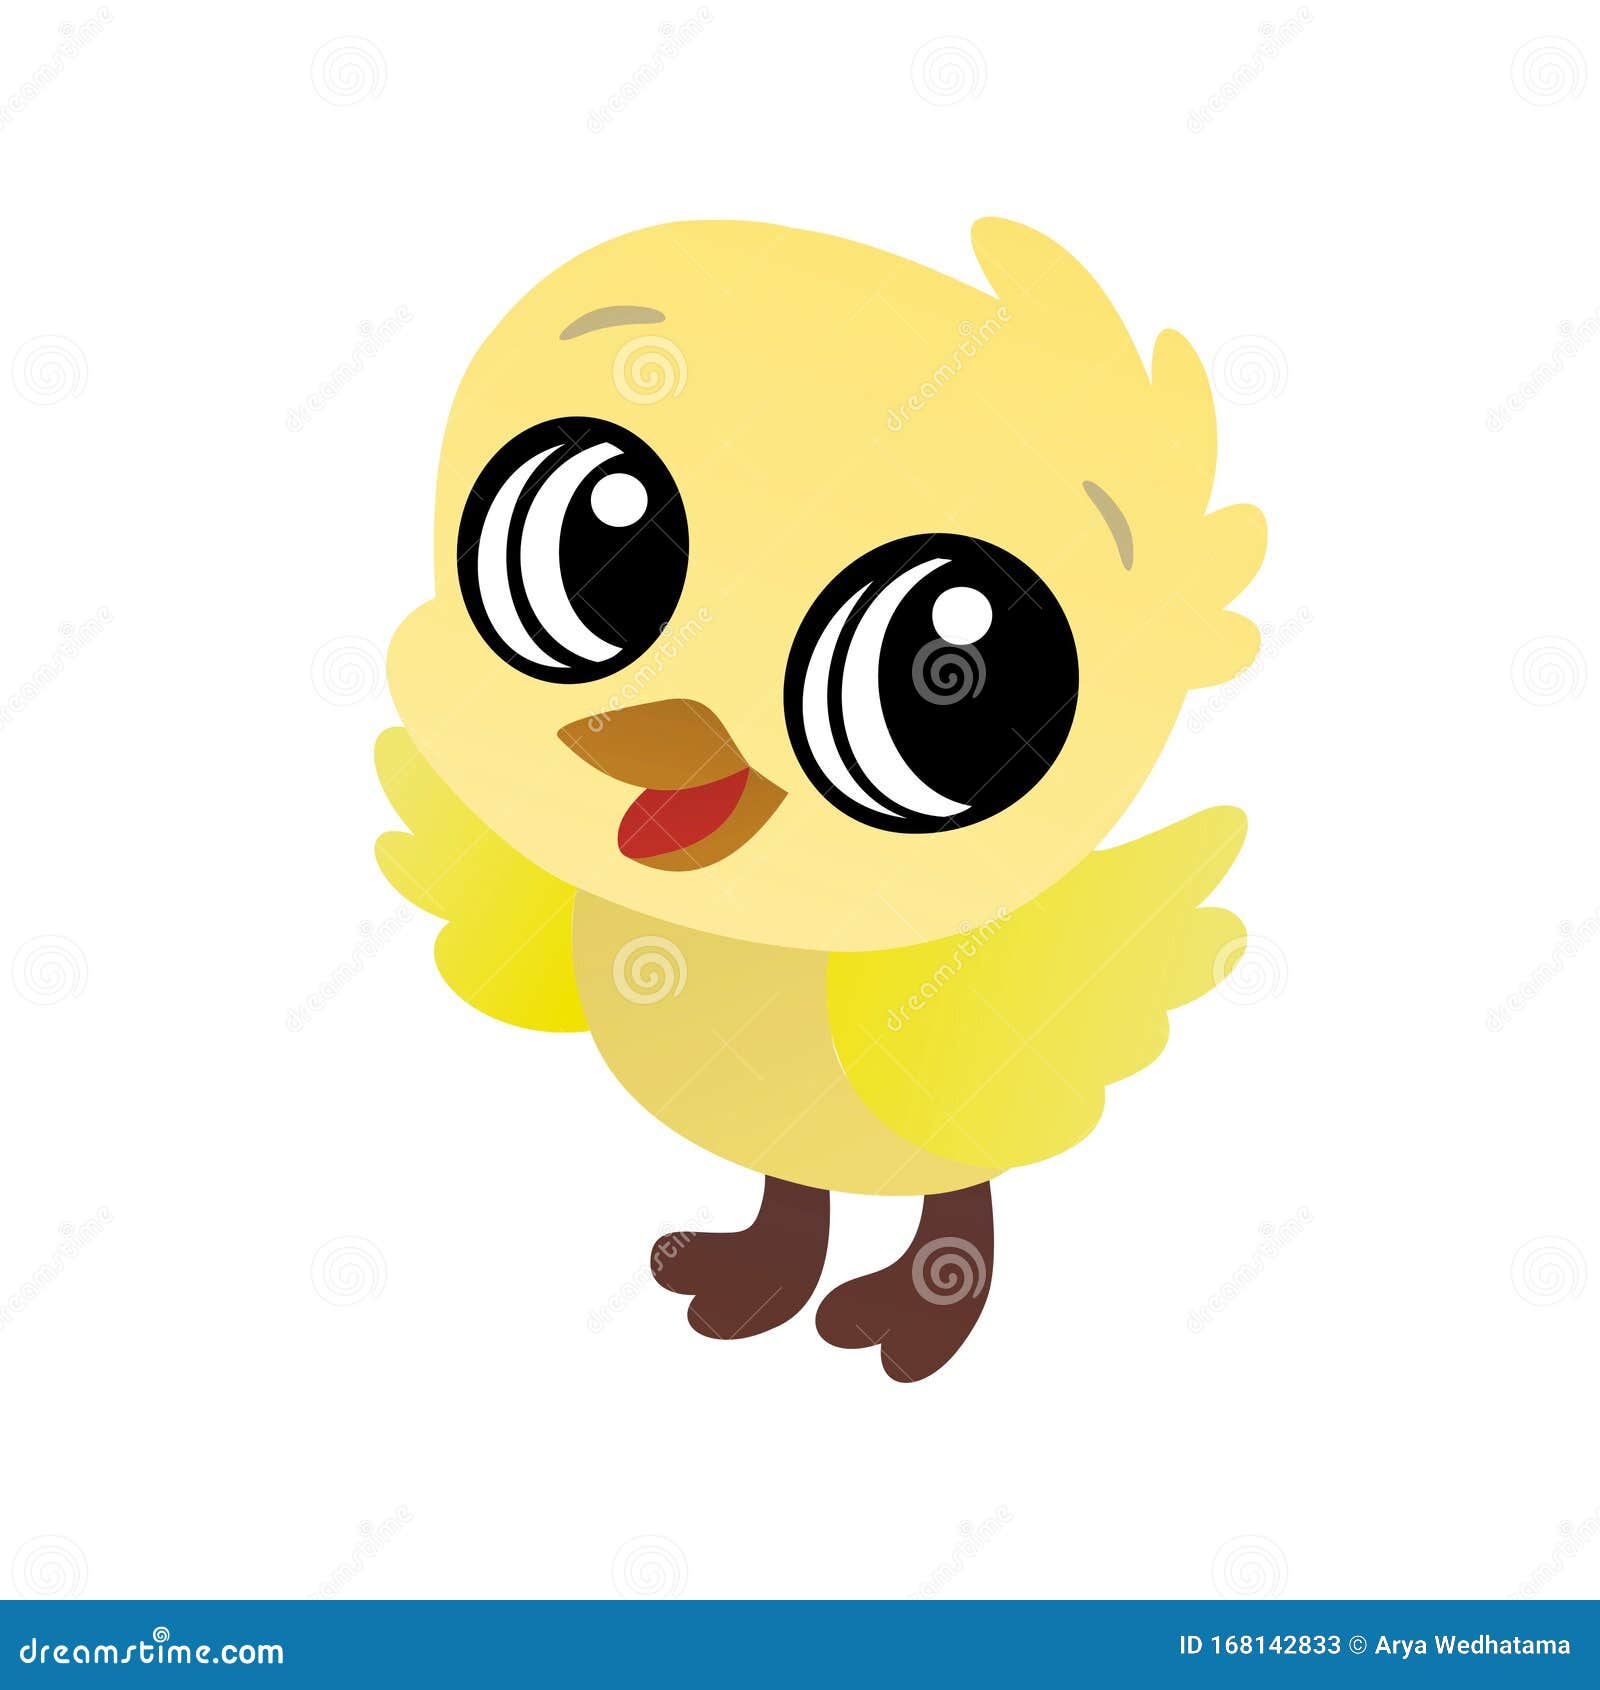 Ilustración Del Dibujo Animado De Un Pájaro Amarillo, Carácter Gracioso Y  Plano Imagen de archivo - Ilustración de esperanza, ilustraciones: 168142833